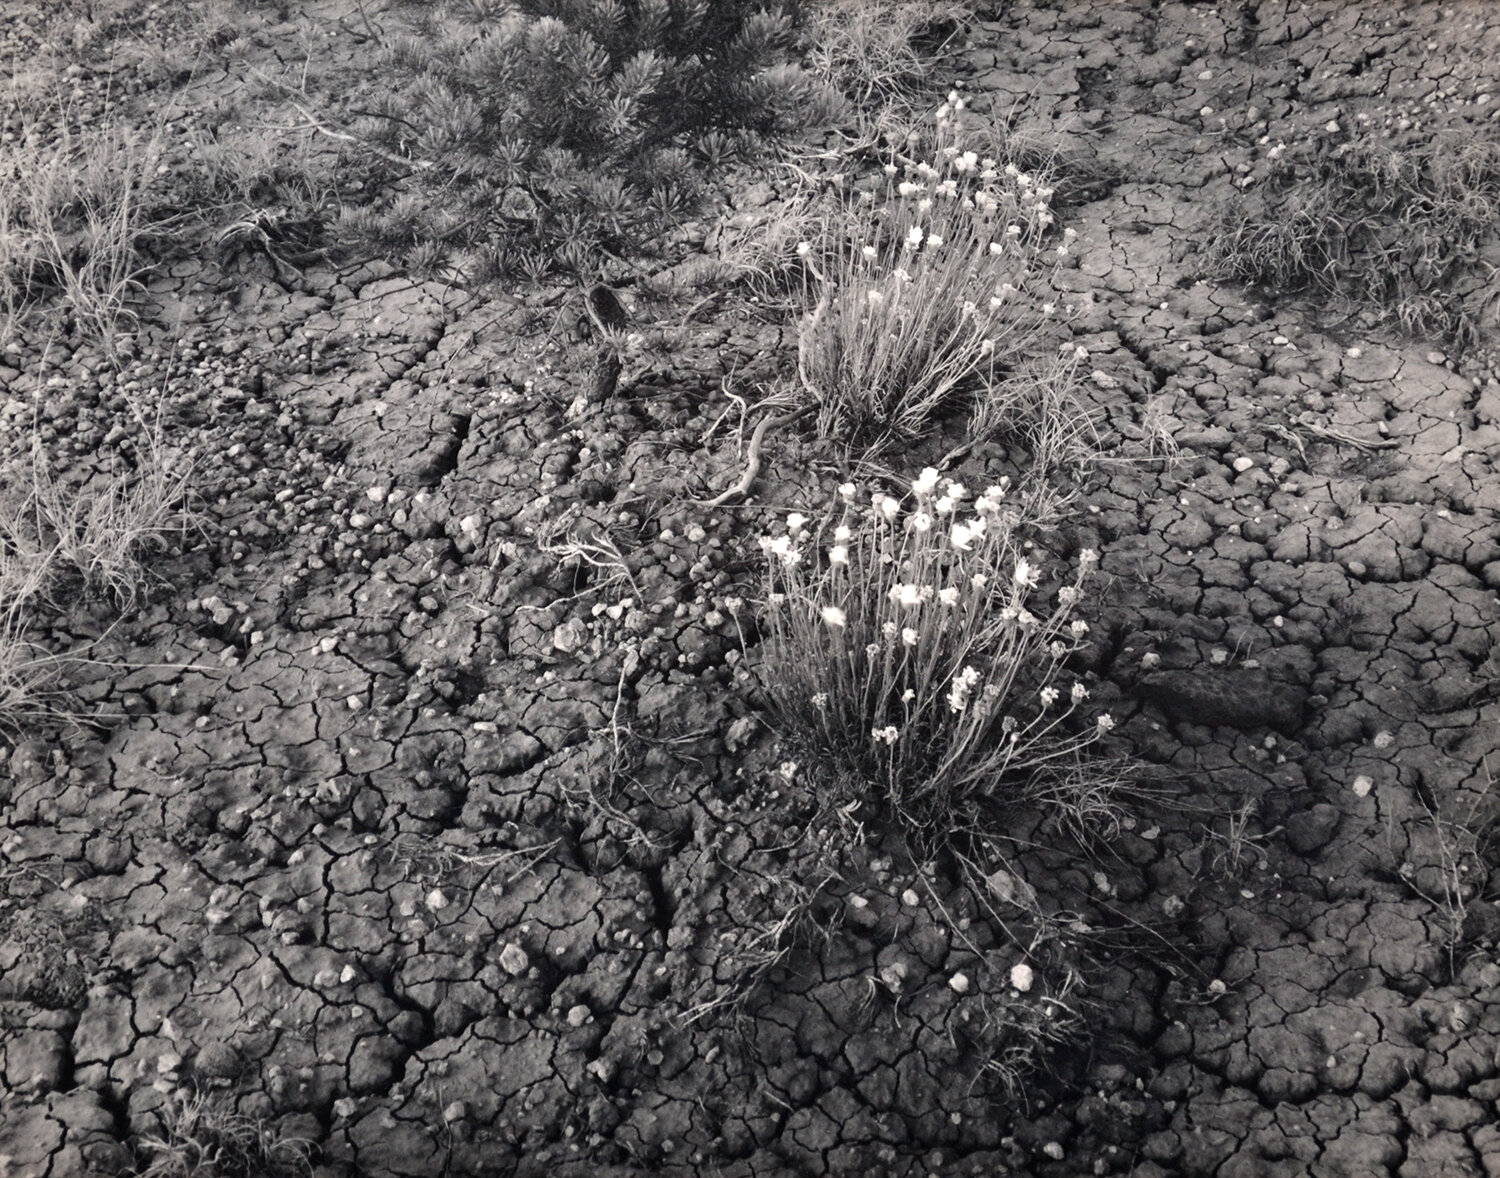 Desert Floor in Bloom, 1993